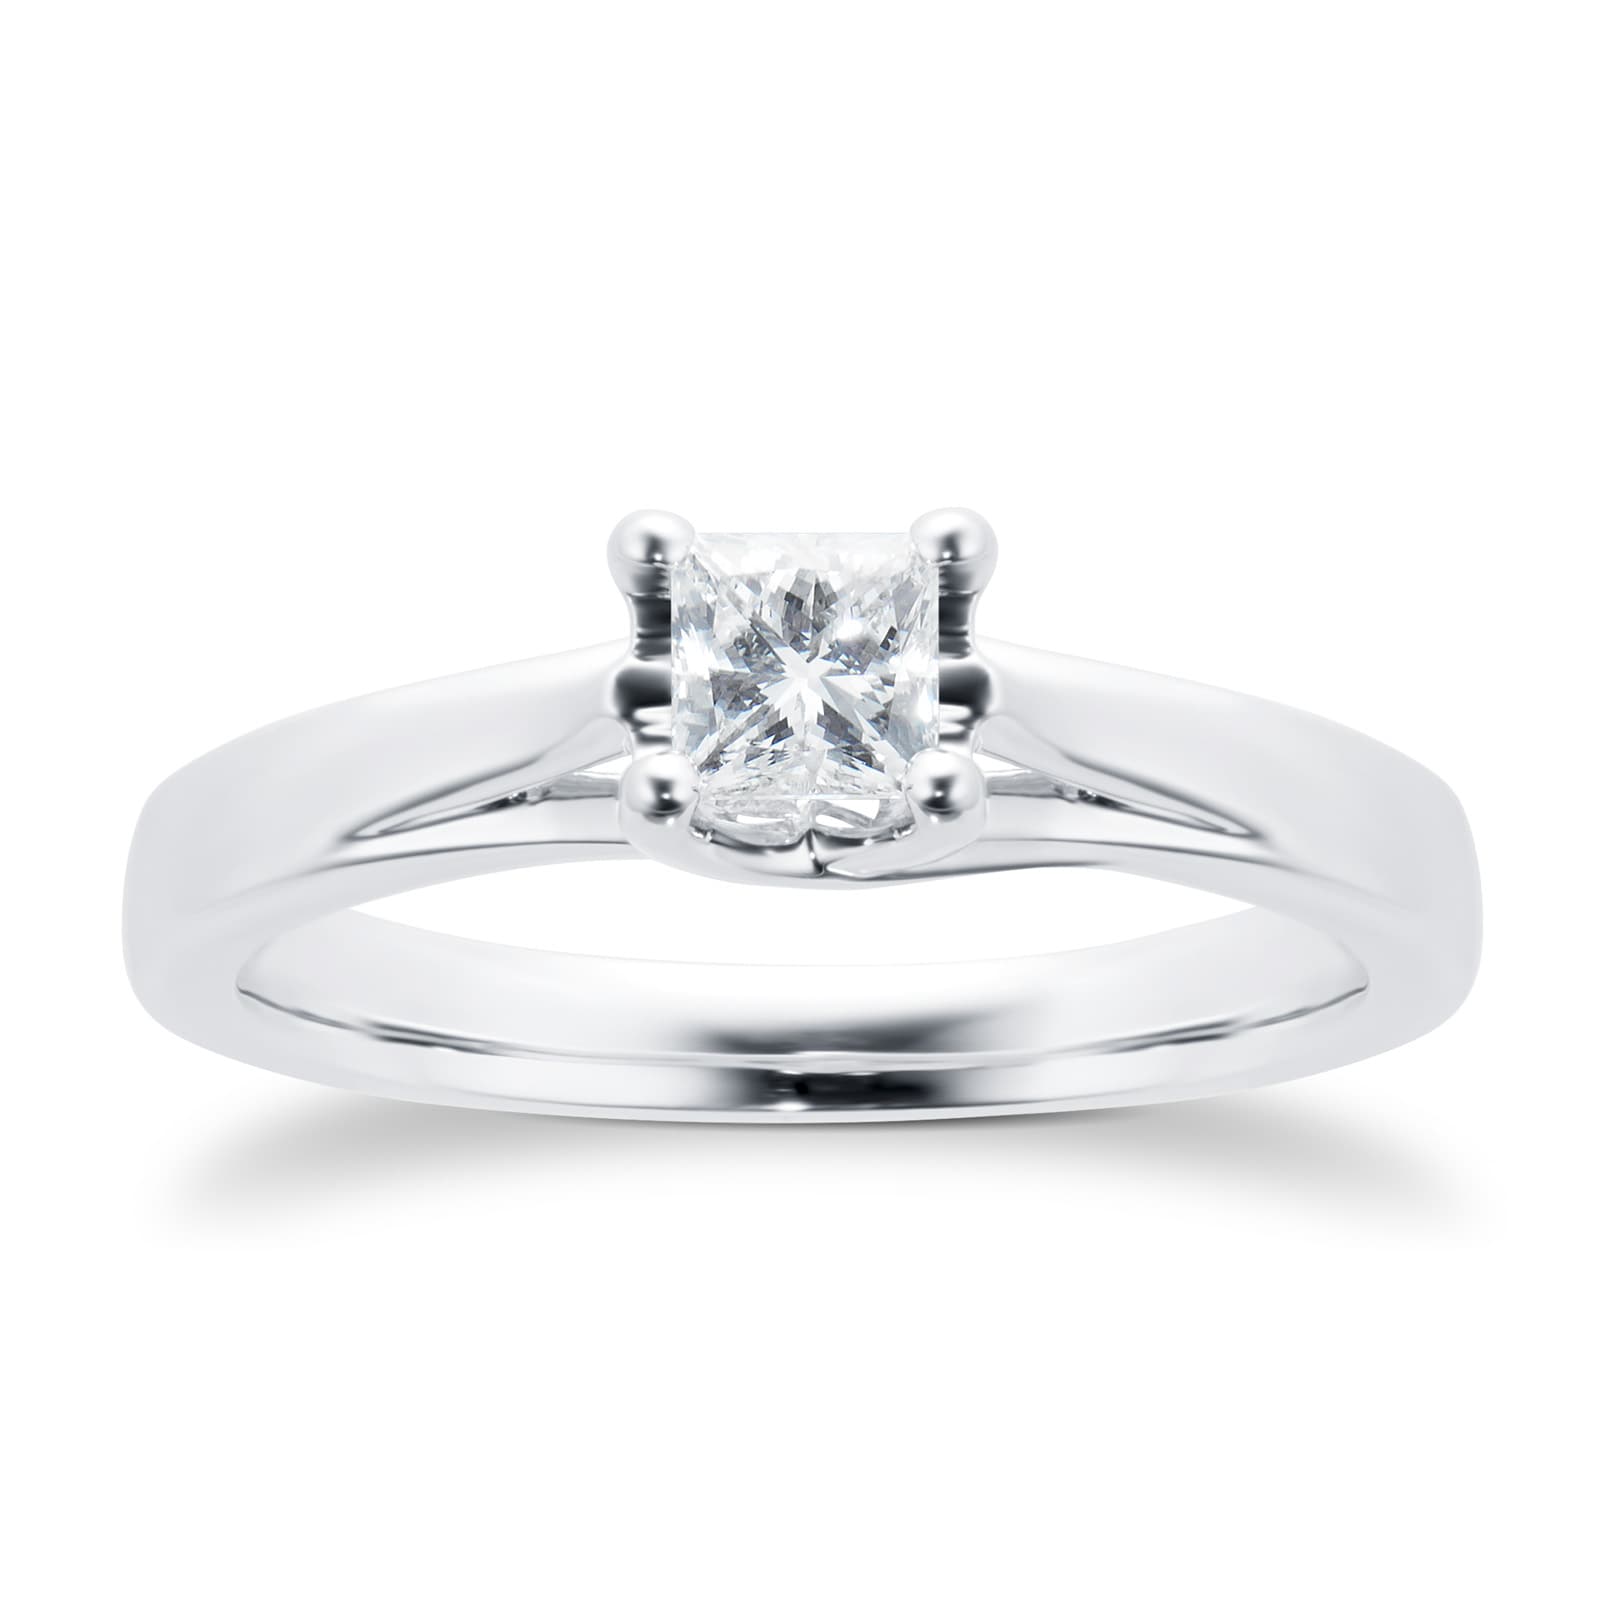 18ct White Gold Princess Cut 0.25 Carat 88 Facet Diamond Ring - Ring Size O